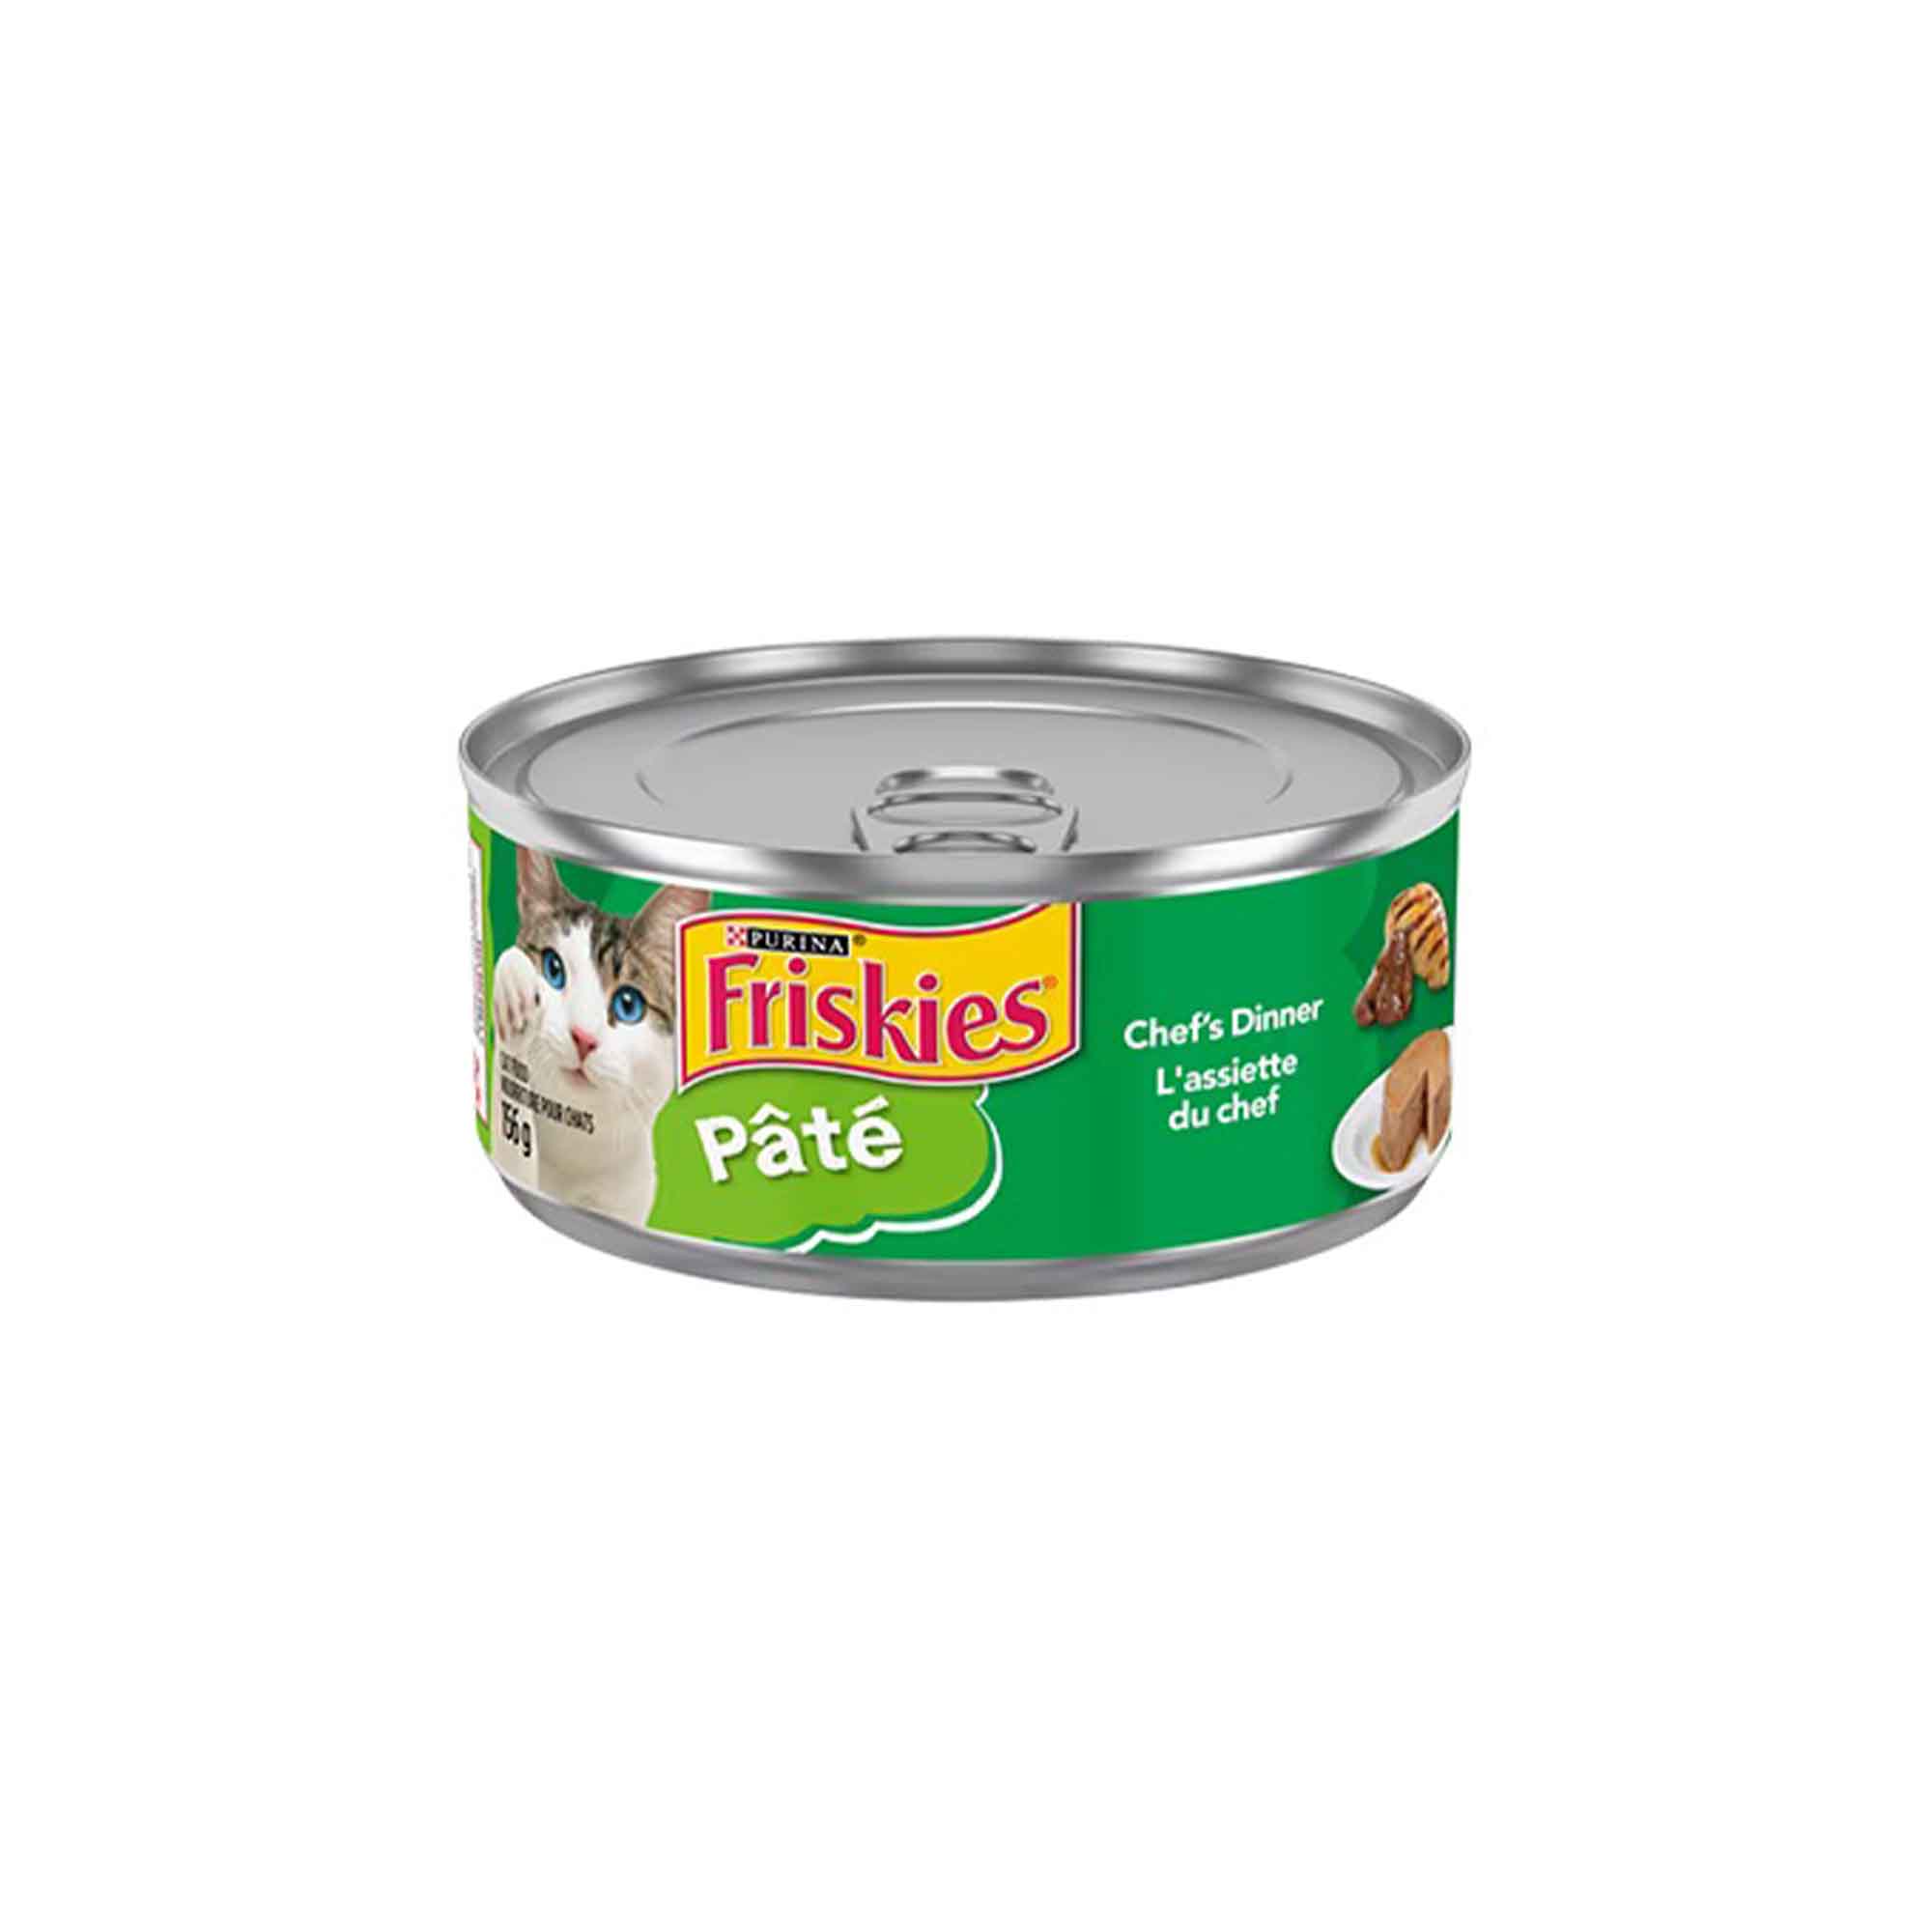 Friskies® Pâté, Chef's Dinner, wet cat food - 156g